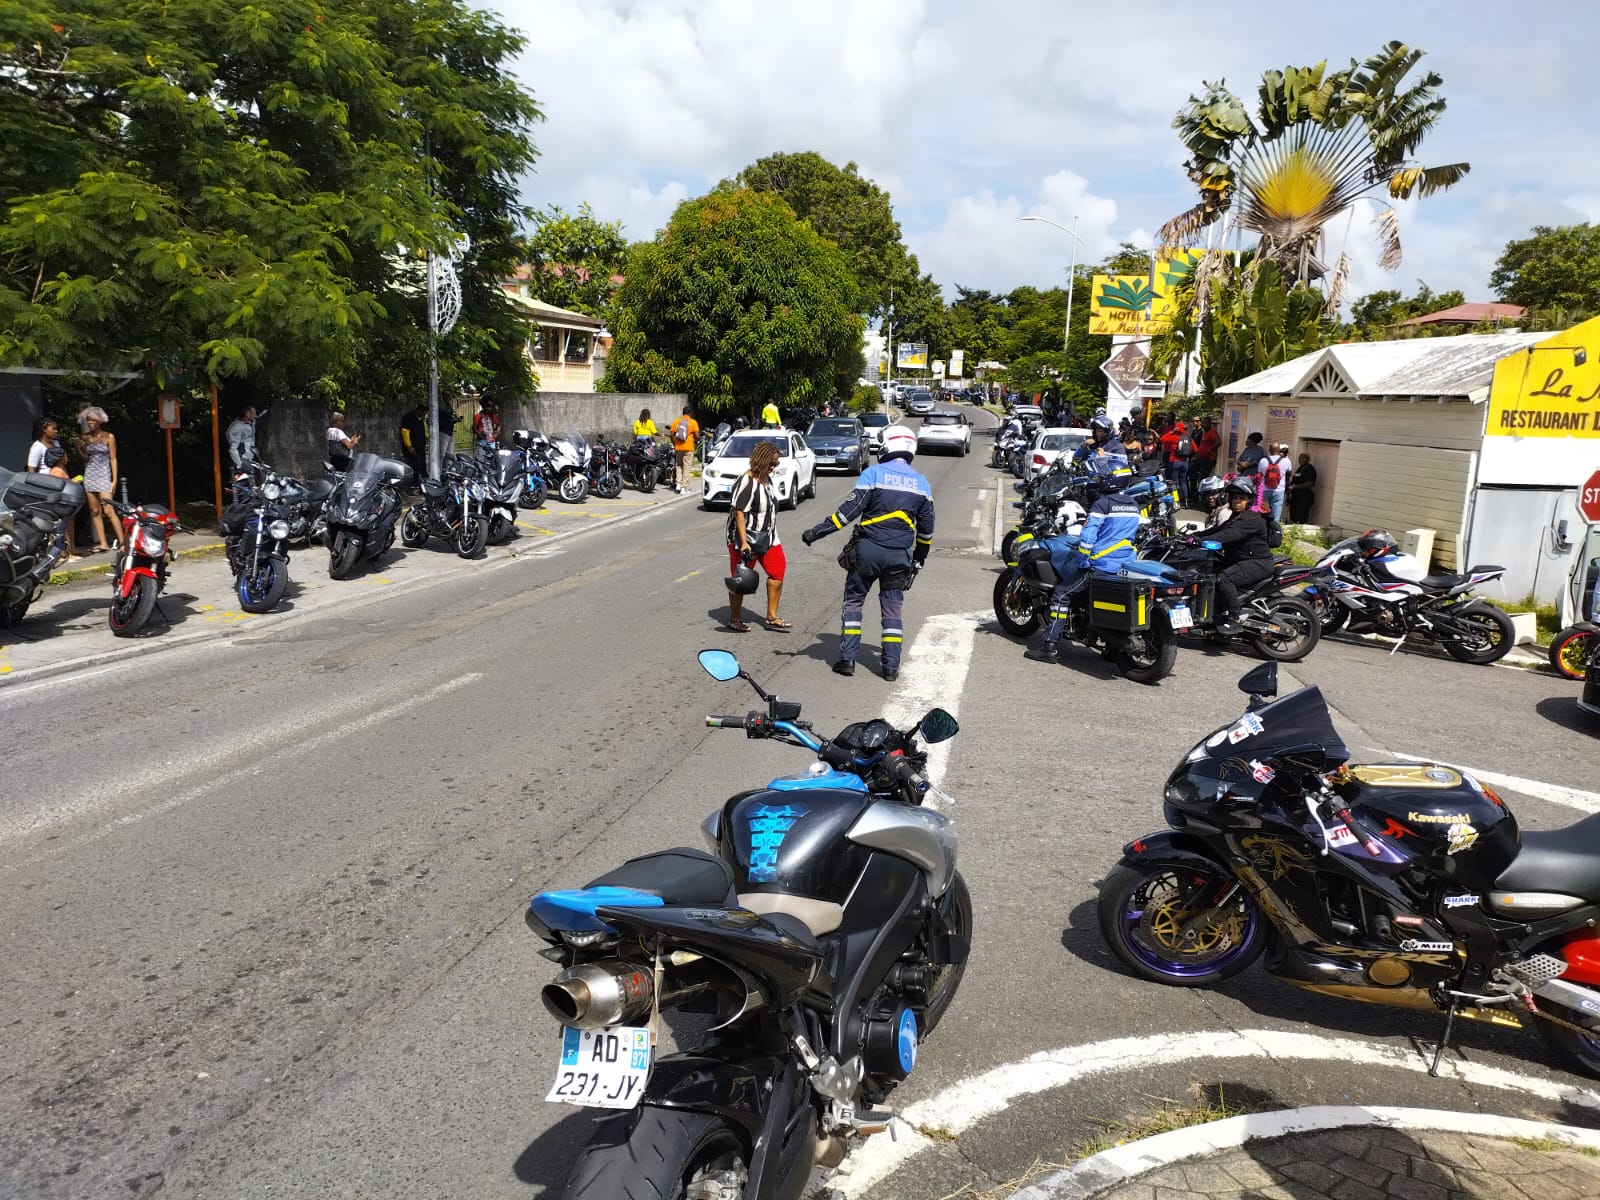     11 novembre : la sortie annuelle des motards de Guadeloupe

